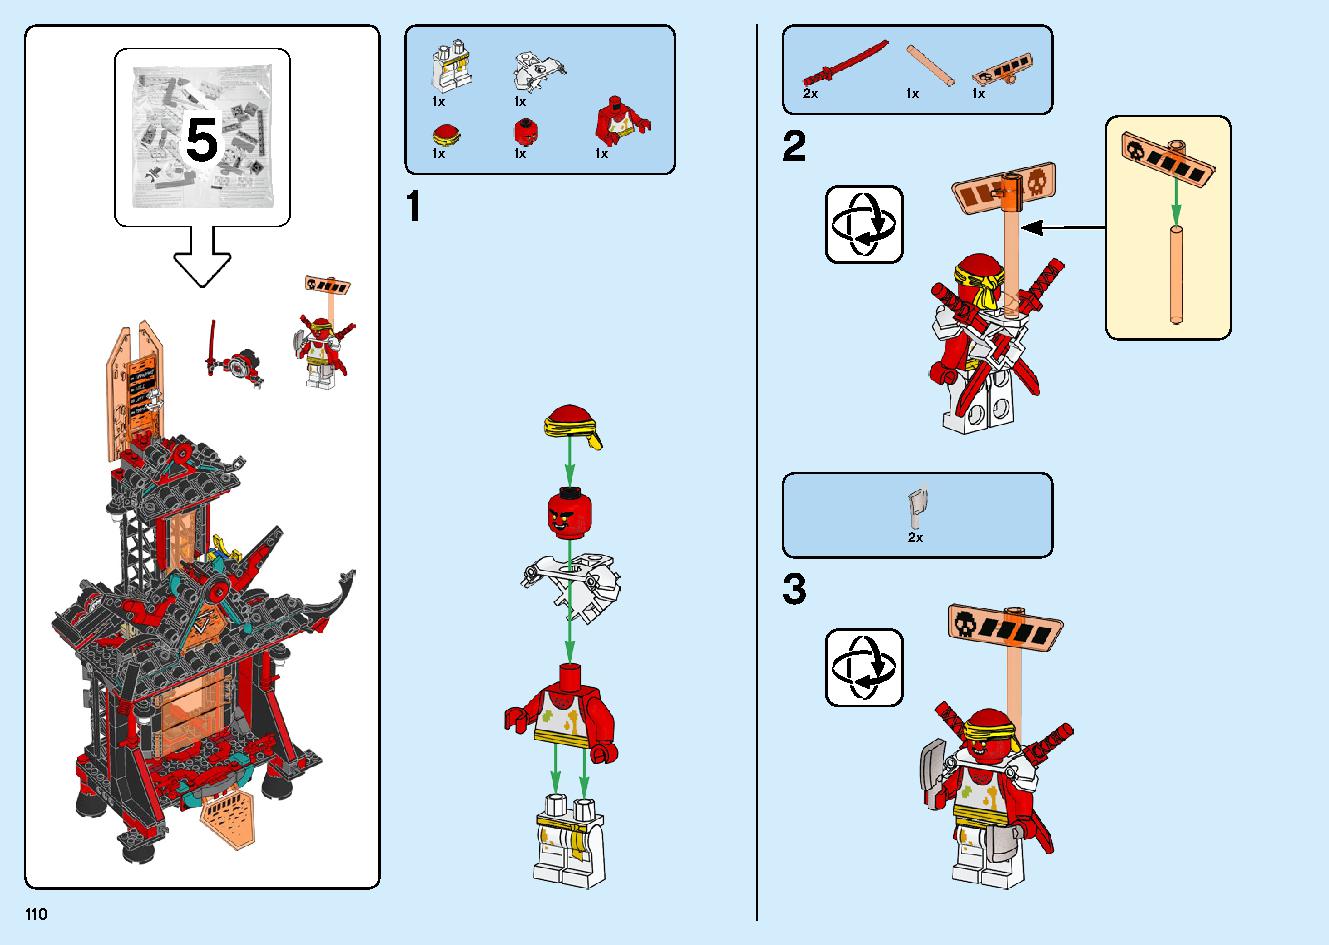 マッドキング神殿 71712 レゴの商品情報 レゴの説明書・組立方法 110 page